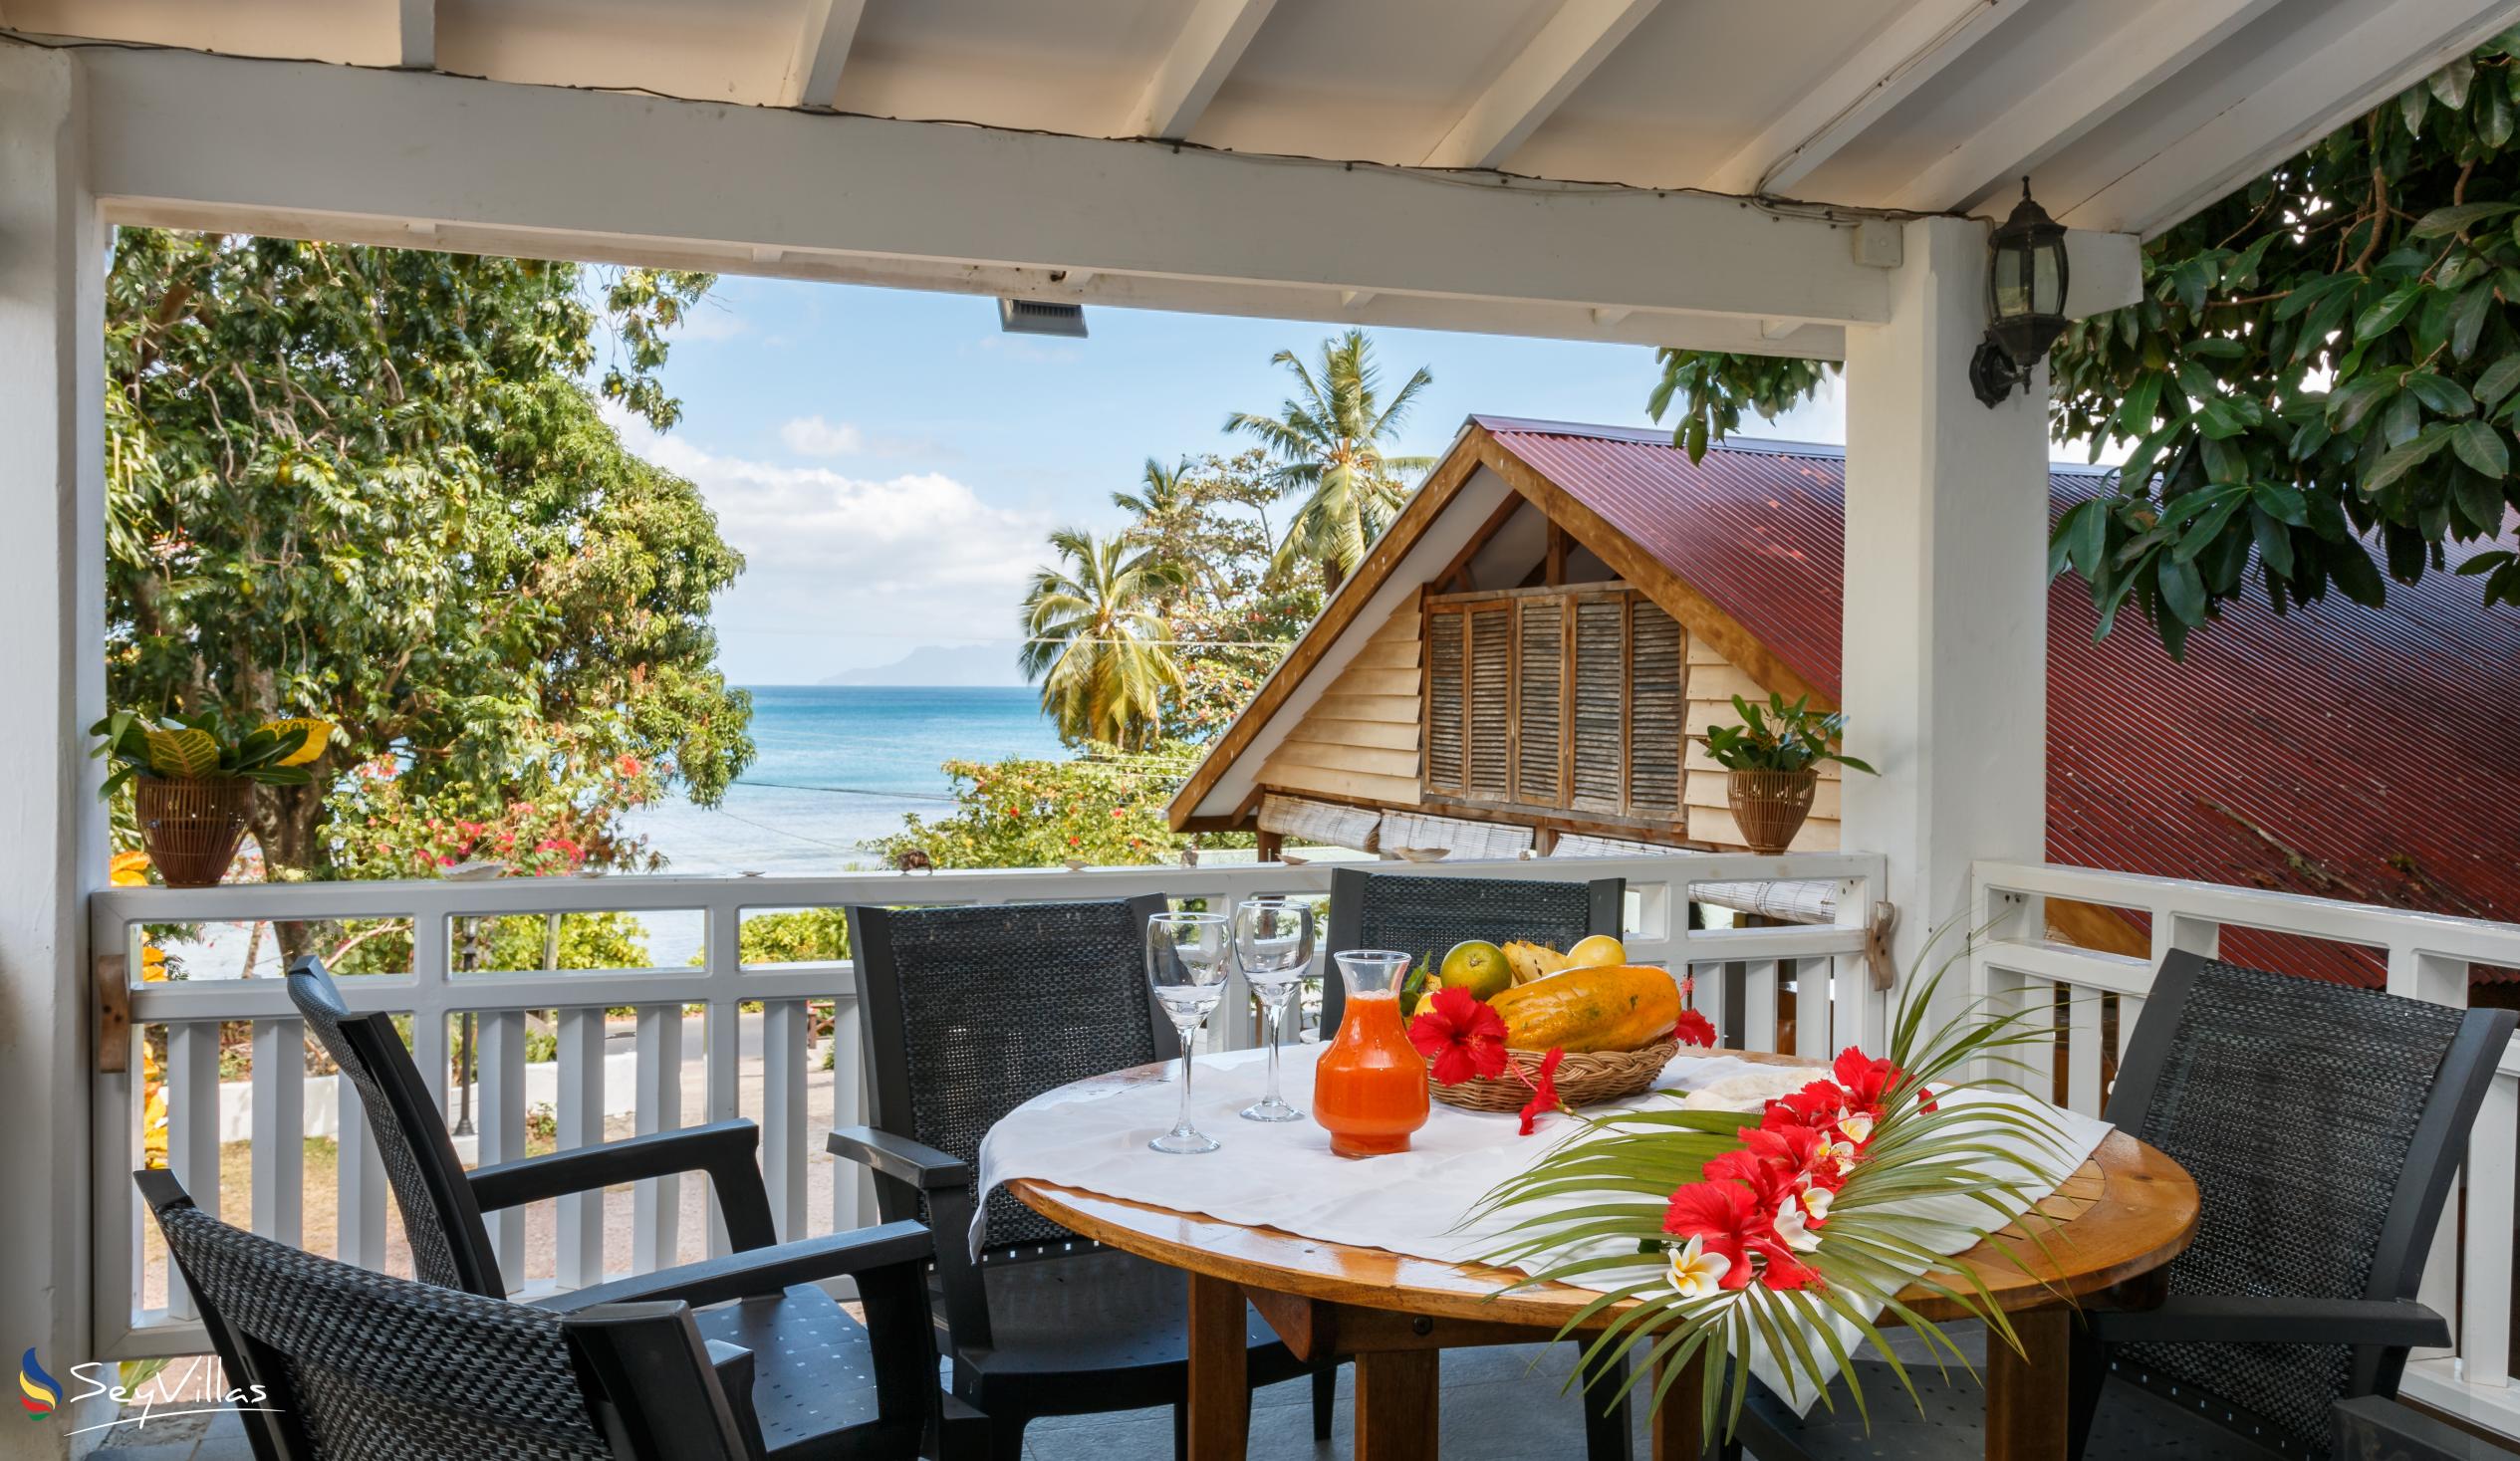 Foto 73: The Beach House (Chateau Martha) - Maison de vacances avec 1 chambre à coucher - Mahé (Seychelles)